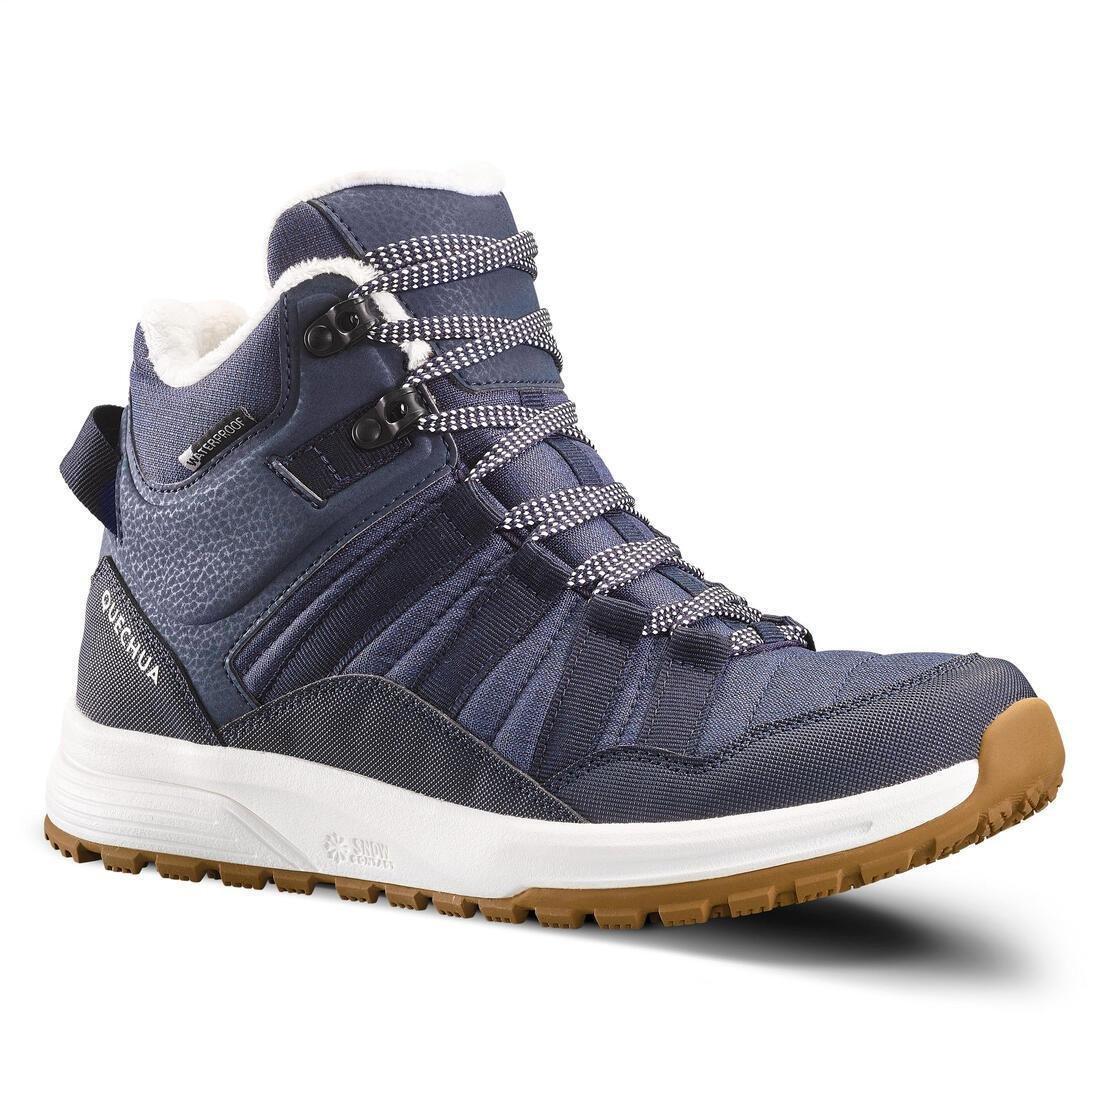 QUECHUA - Women Waterproof Hiking Shoes - Sh100 X-Warm, Blue